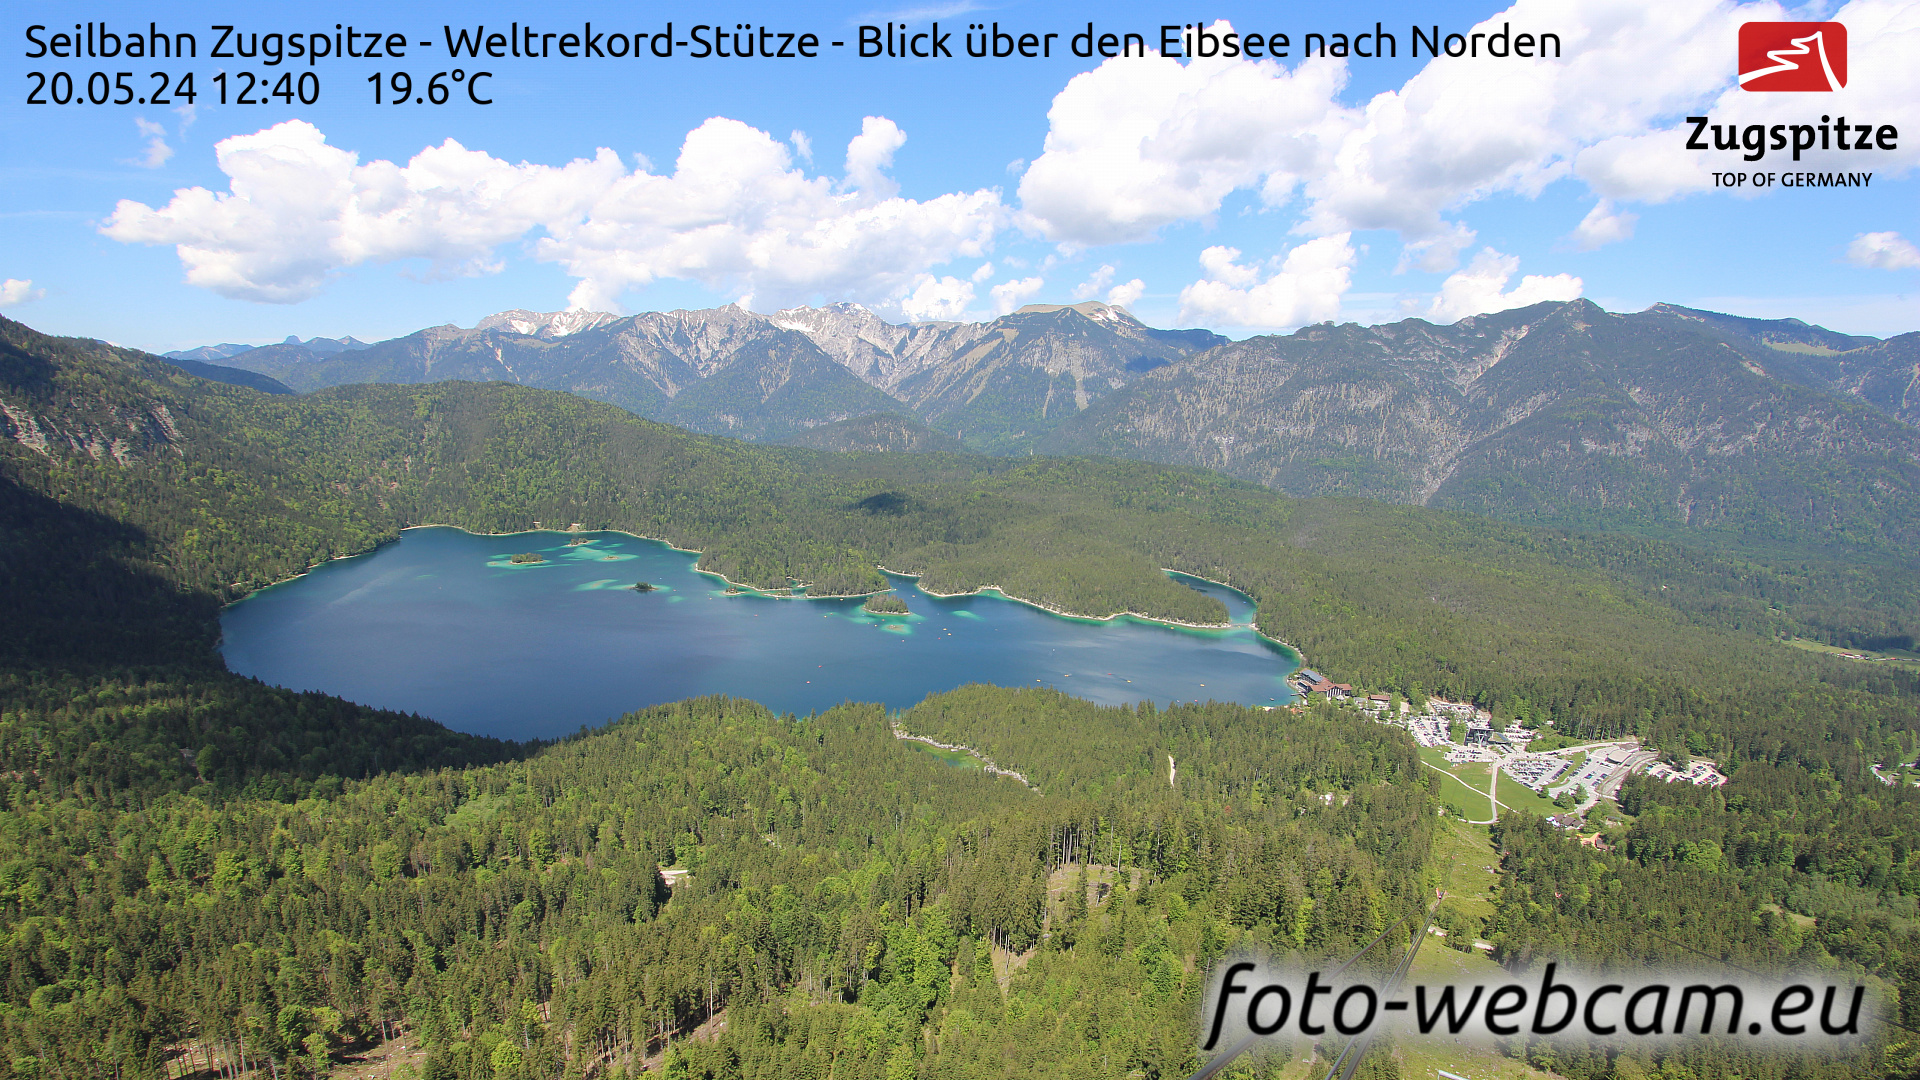 Zugspitze So. 12:49